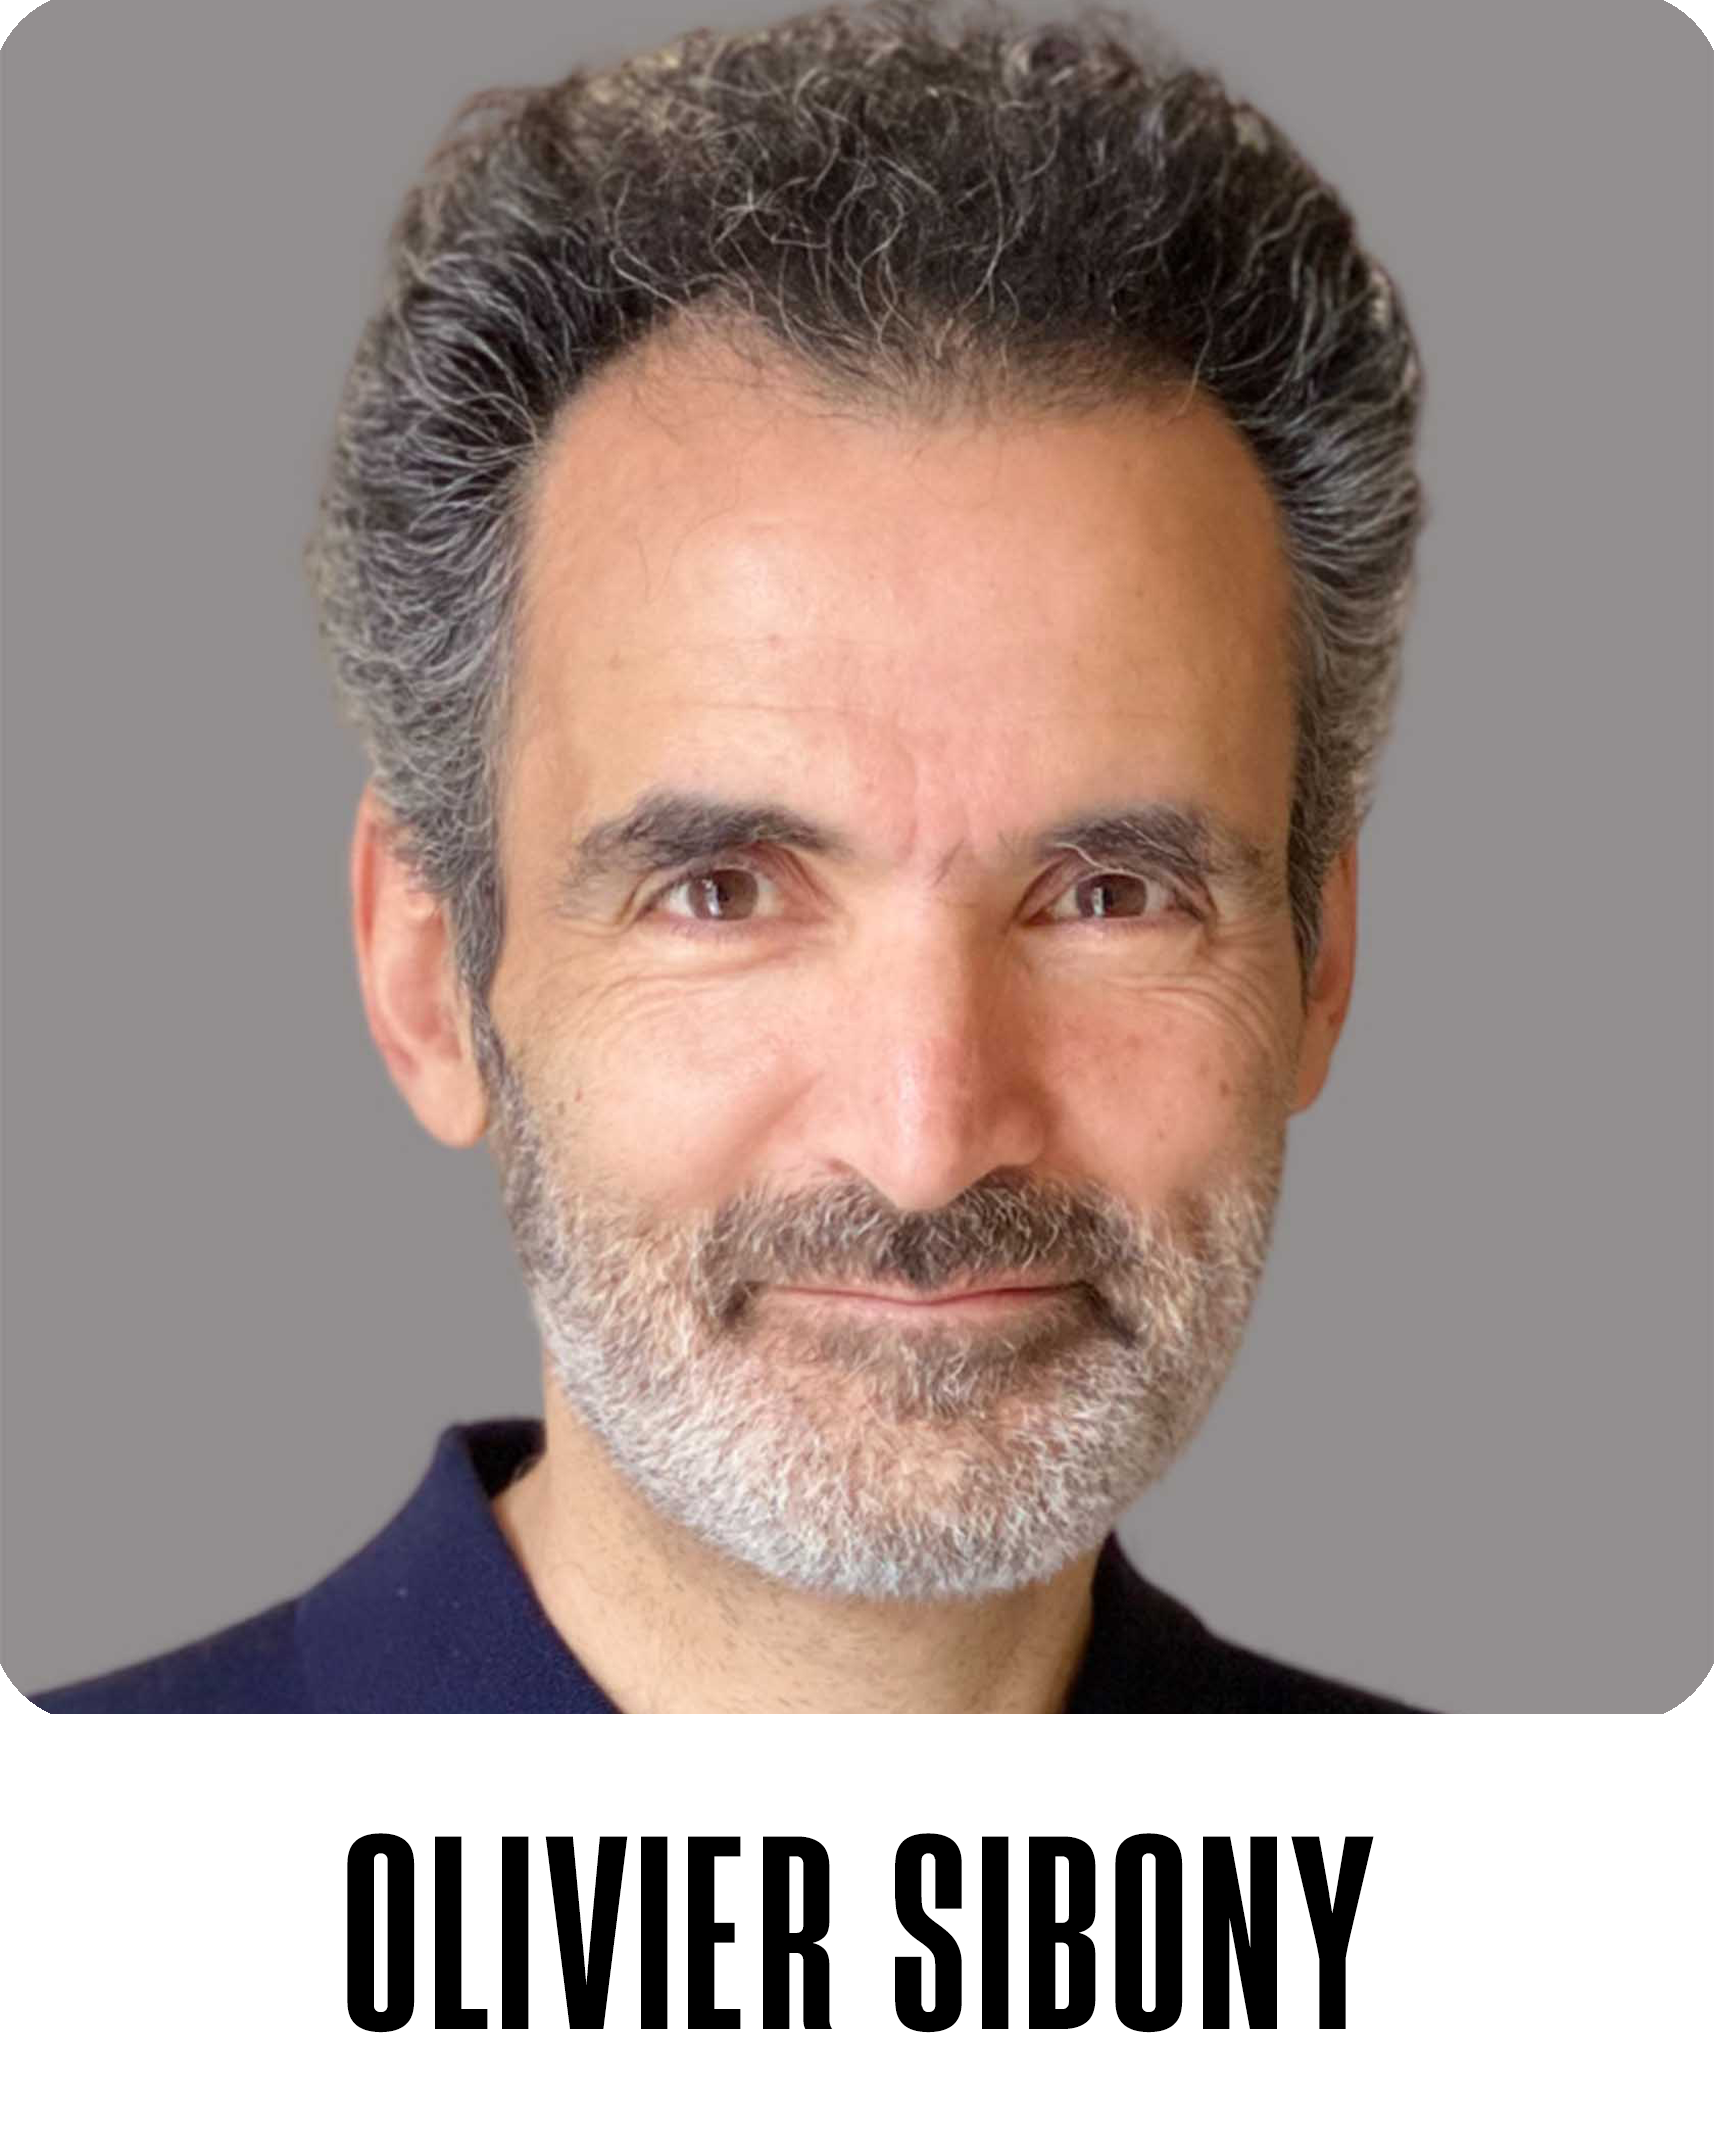 Oliver Sibony